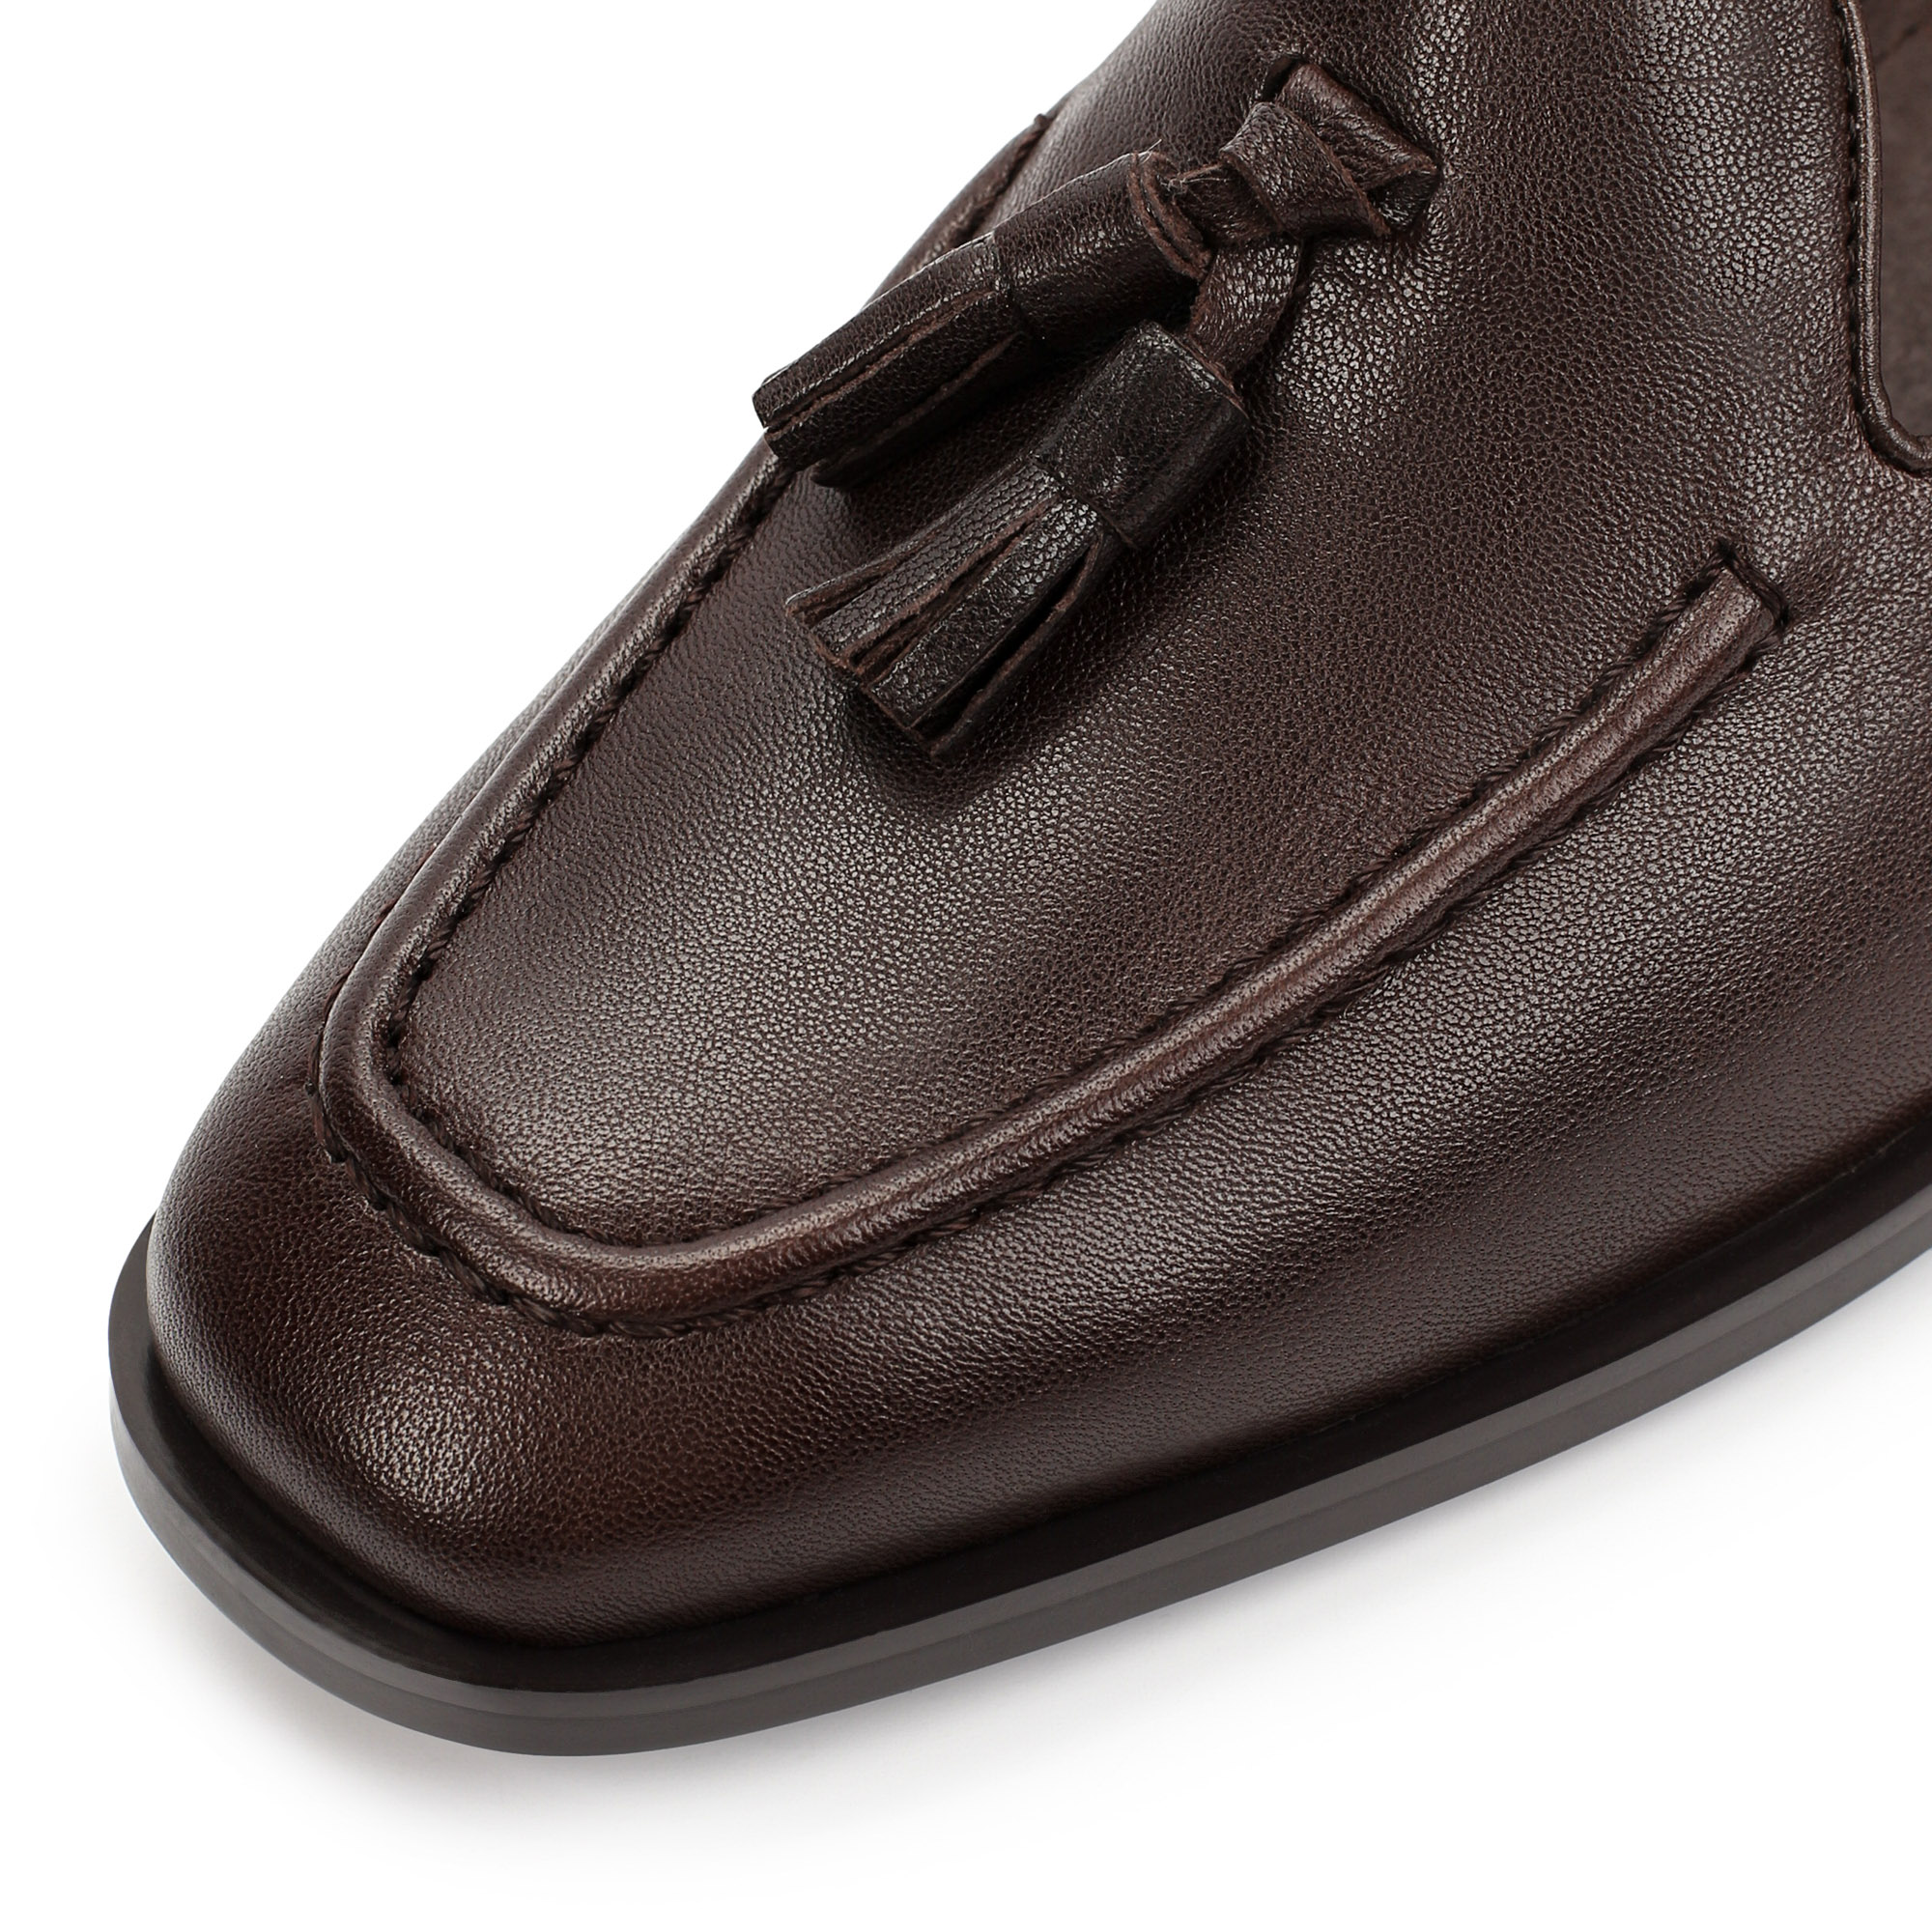 Туфли Thomas Munz 233-879A-2109, цвет темно-коричневый, размер 38 - фото 6